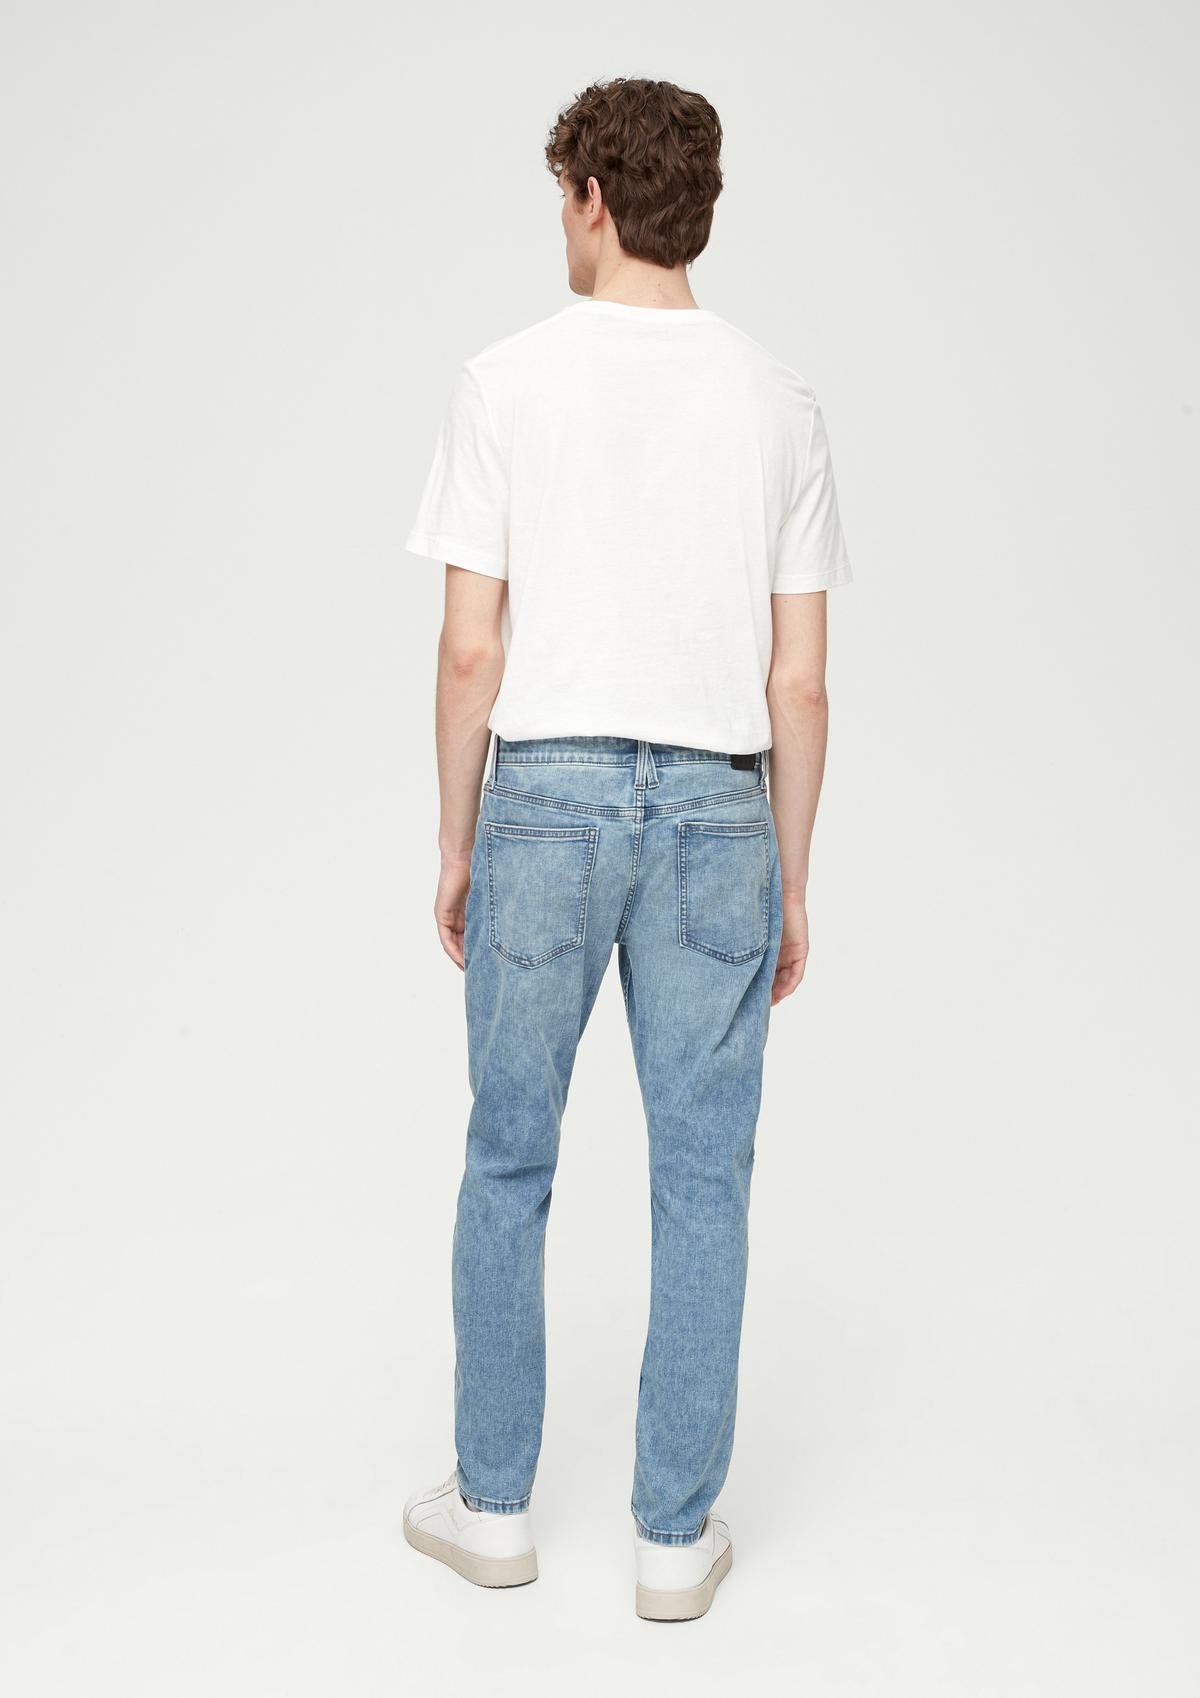 s.Oliver Slim : jean de style 5 poches